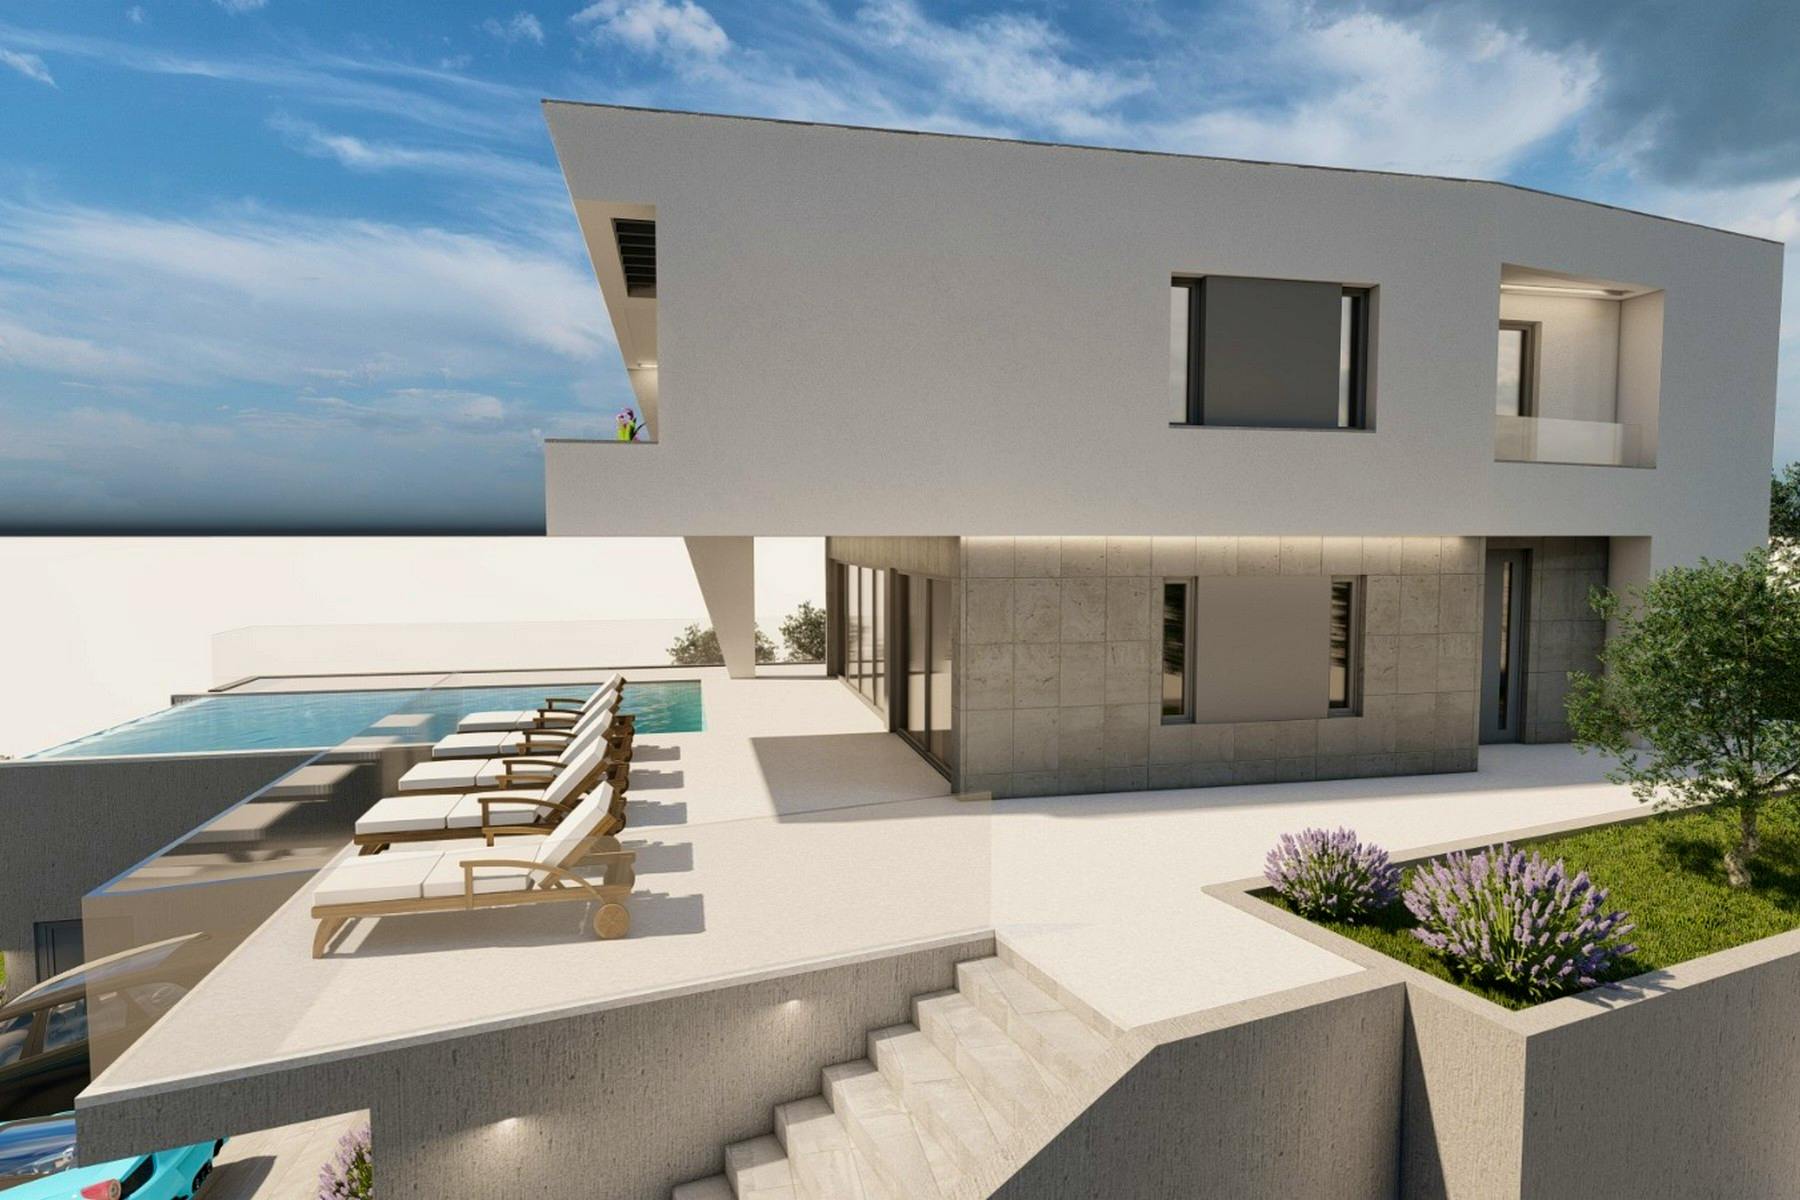 New modern villa under construction near Split